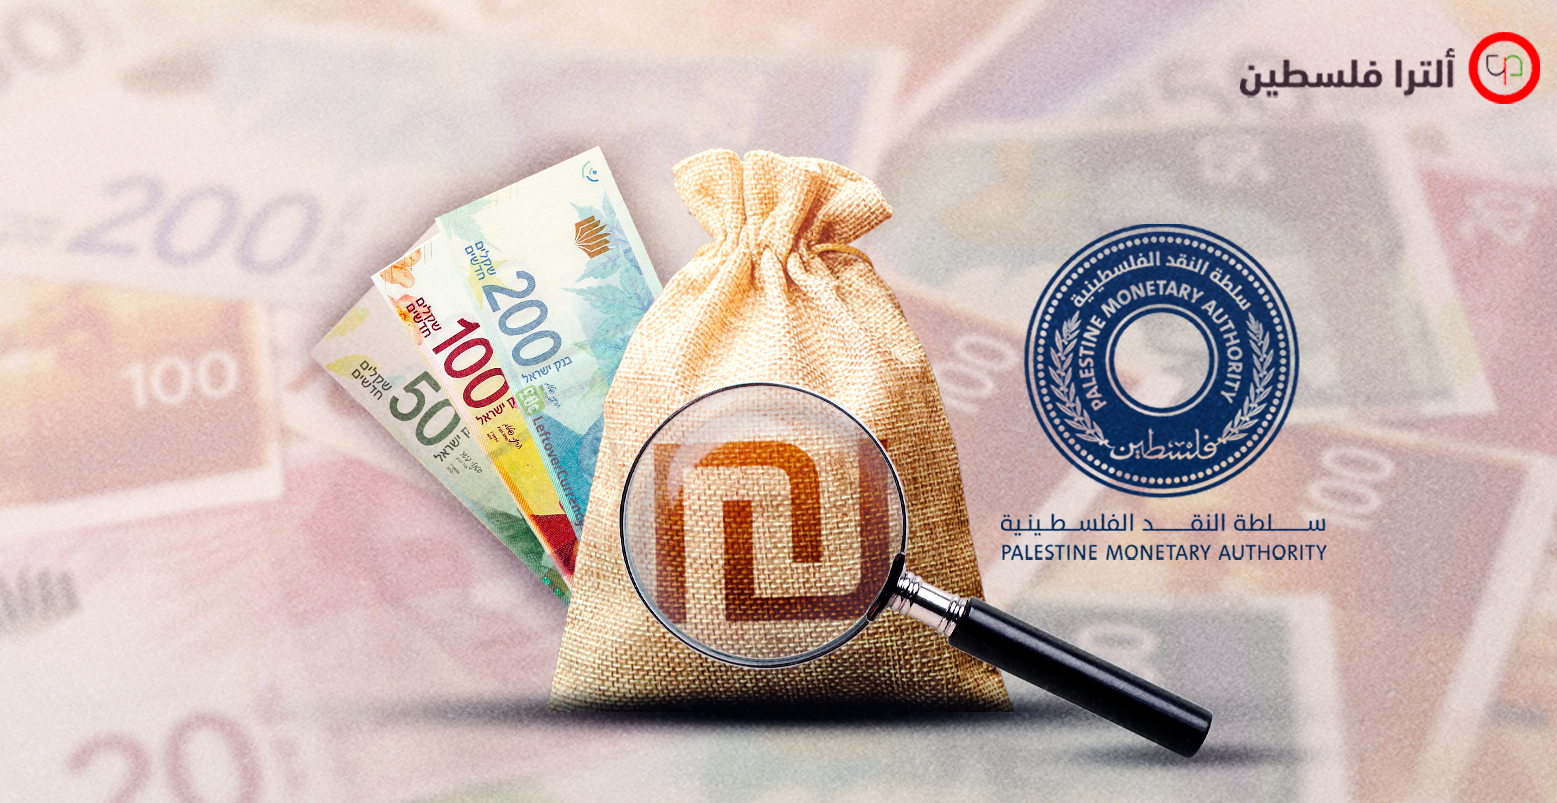 ضابط تحقيق إسرائيلي قال إن ما ضُبط من أوراق نقدية مزورة "قطرة في بحر"